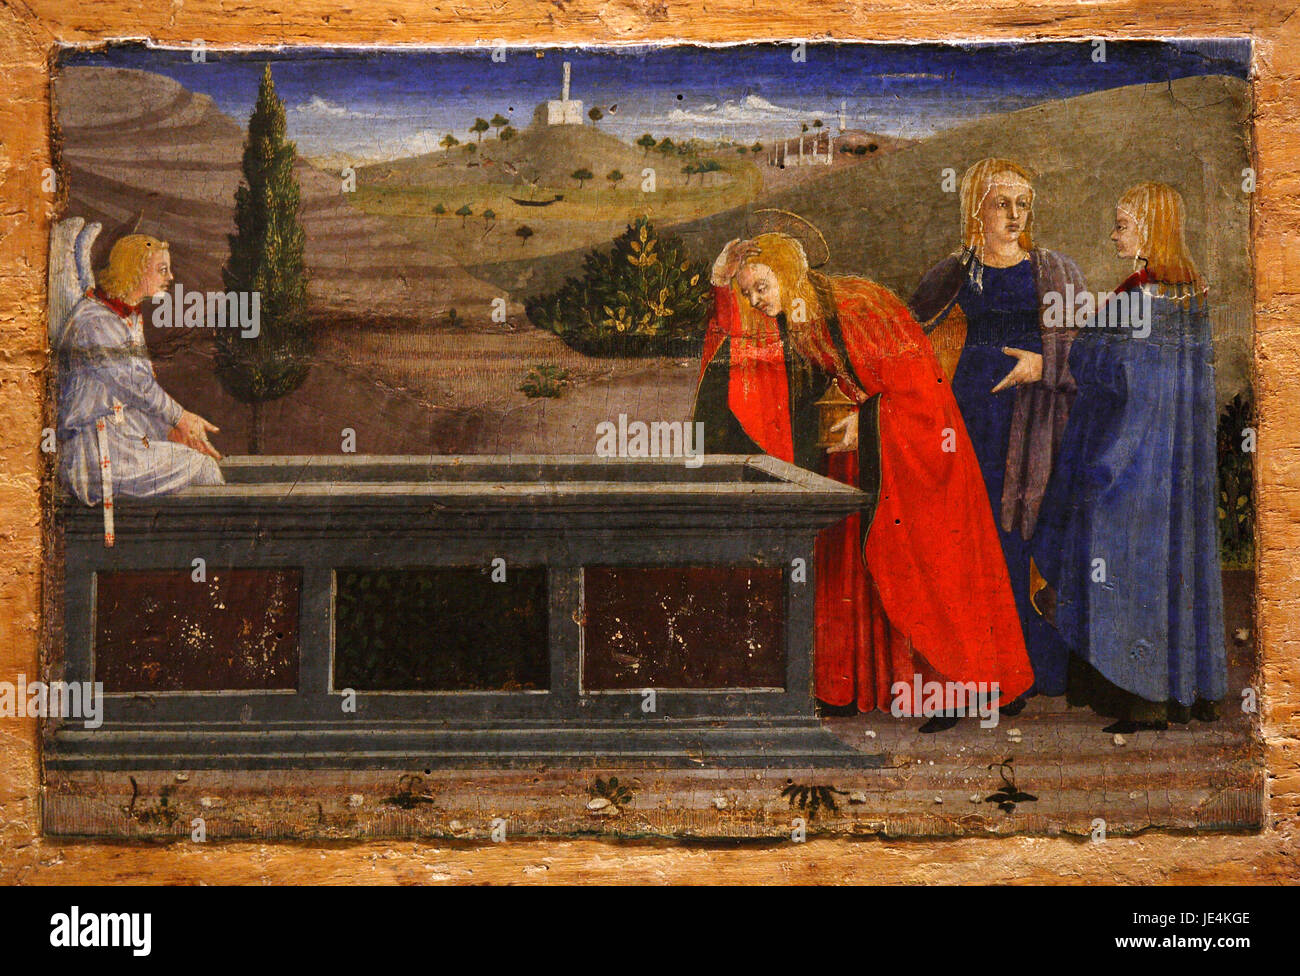 Sansepolcro: Museo di Piero della Francesca: restaurato dipinto di Piero della Francesca parte del polittico della Madonna della Misericordia Foto Stock